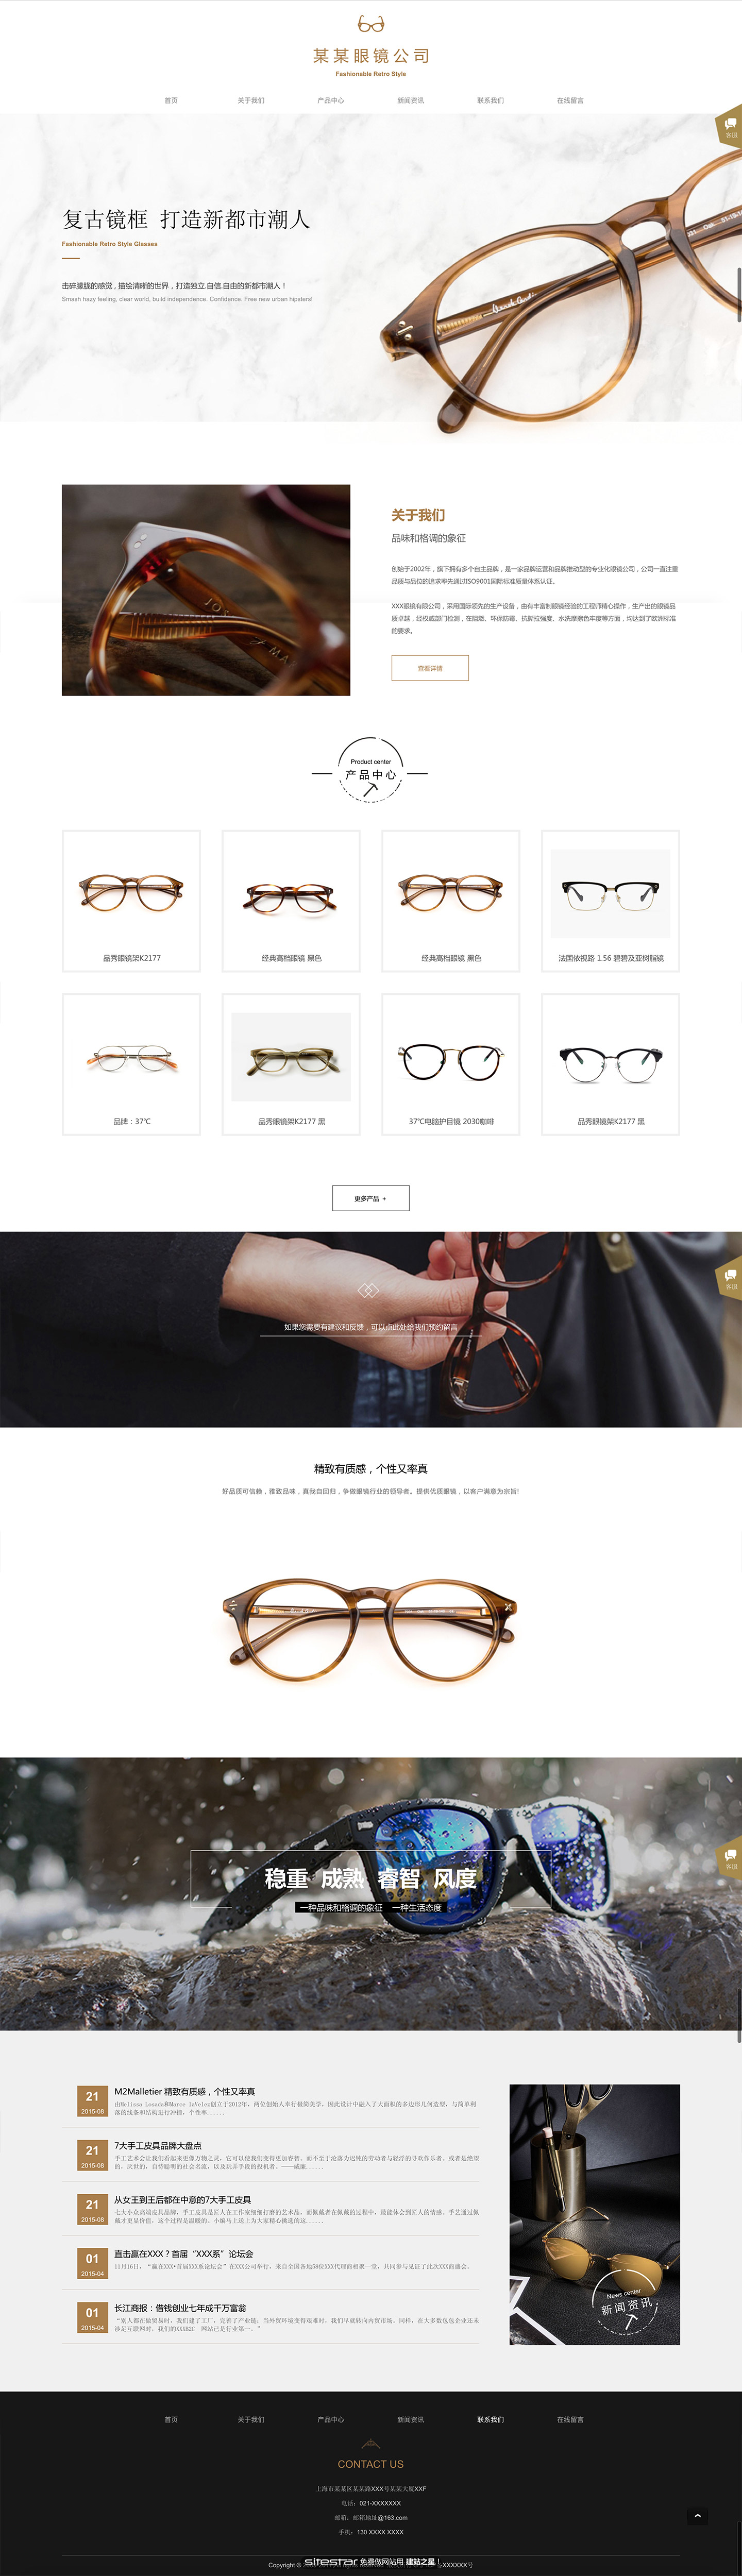 企业网站精美模板-glasses-500